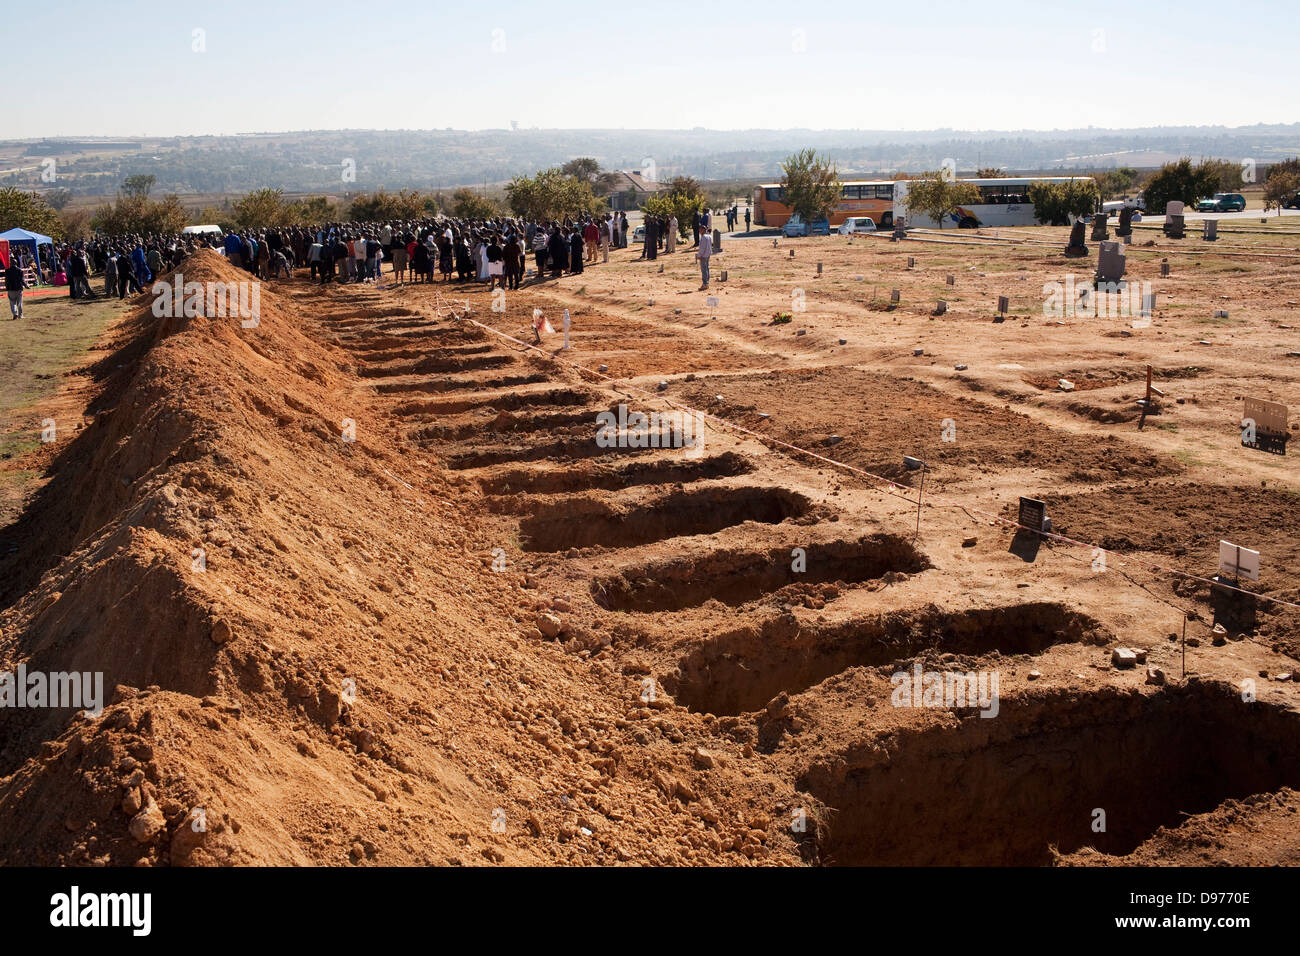 Les funérailles organisées simultanément dans un grand cimetière poussiéreux inhumations de masse une chose commune à Johannesburg grande foule Banque D'Images